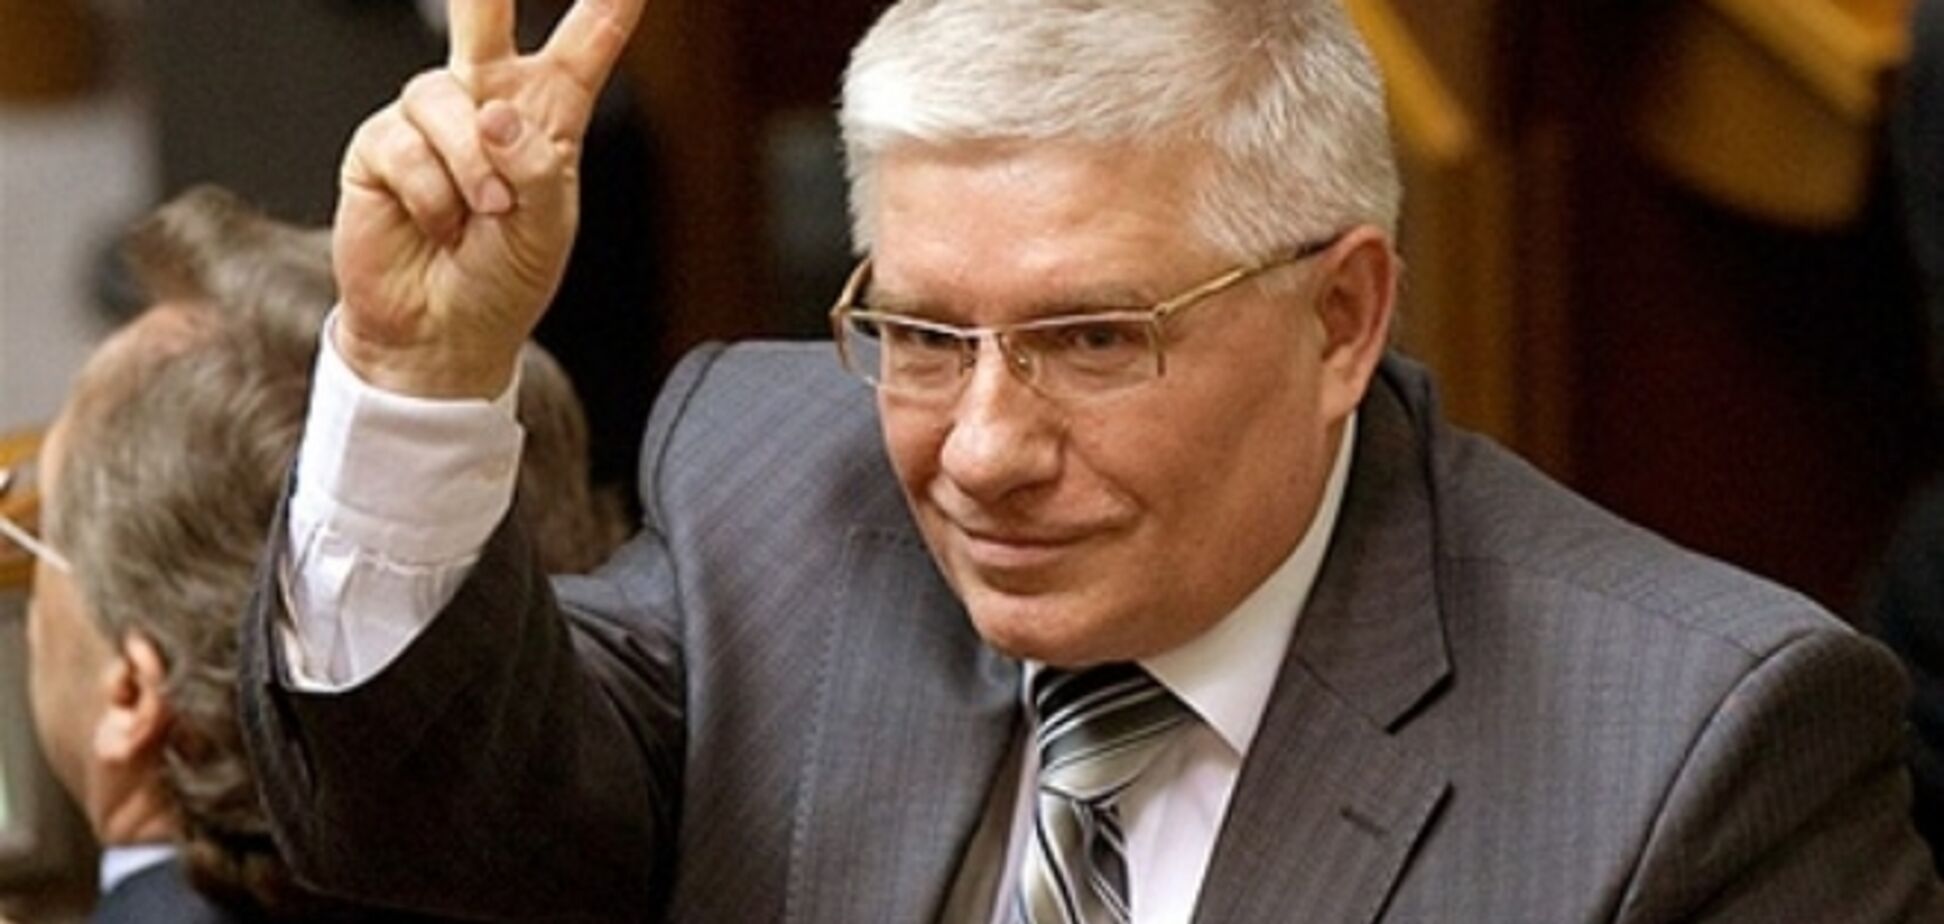 Чечетова не випускають на волю навіть після внесення застави - адвокат 